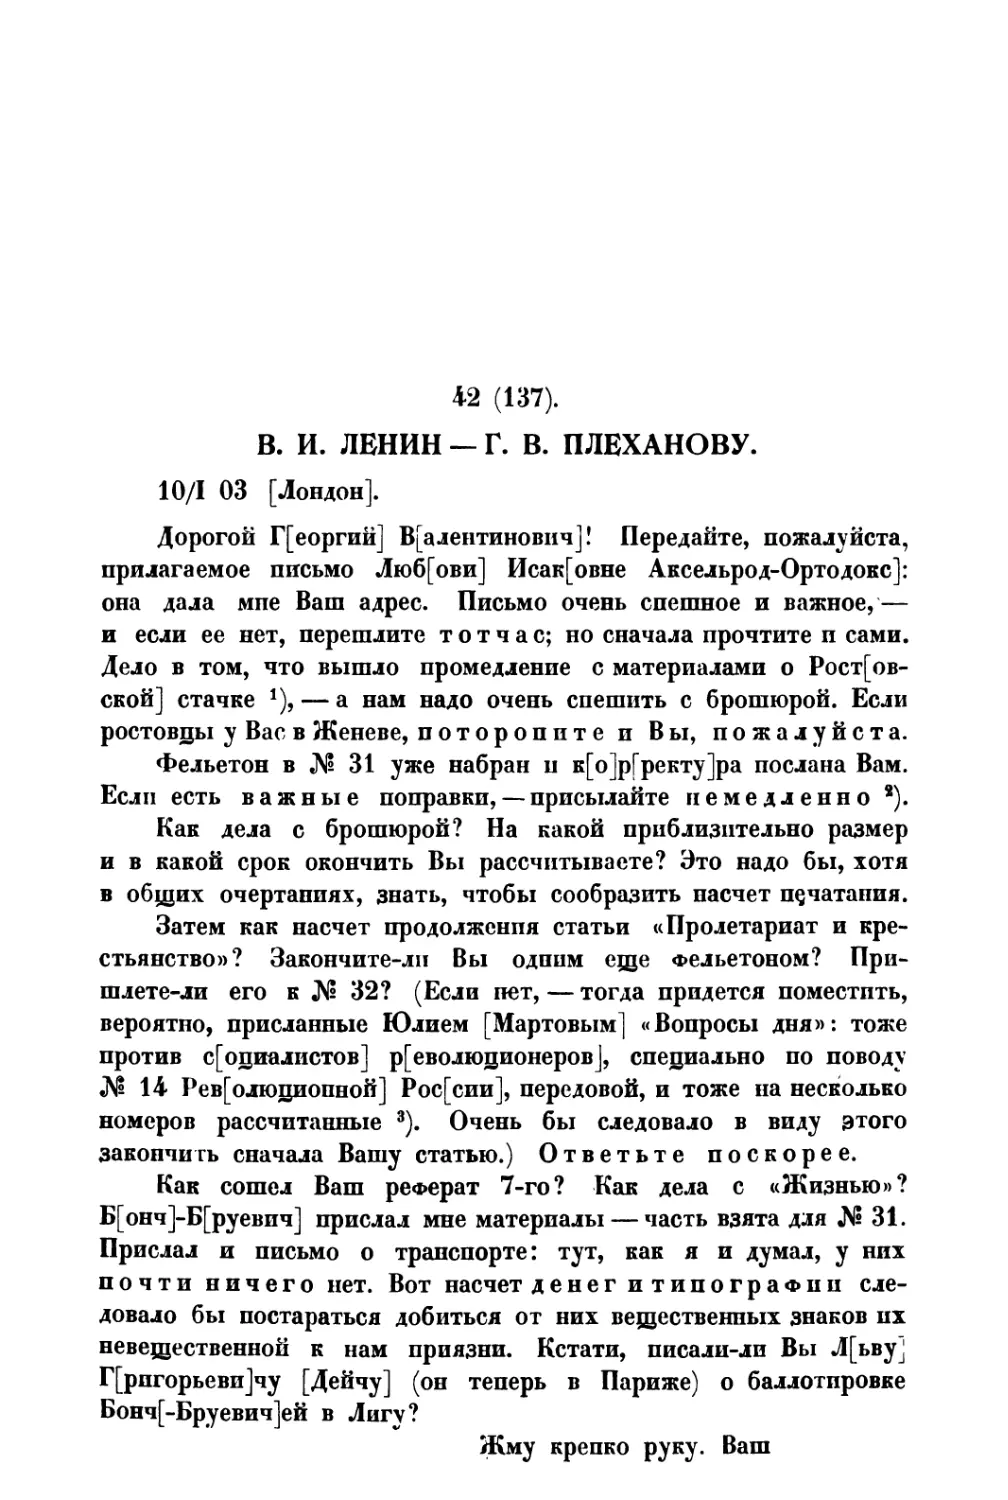 42. » Г. В. Плеханову от 10 I 1903 г